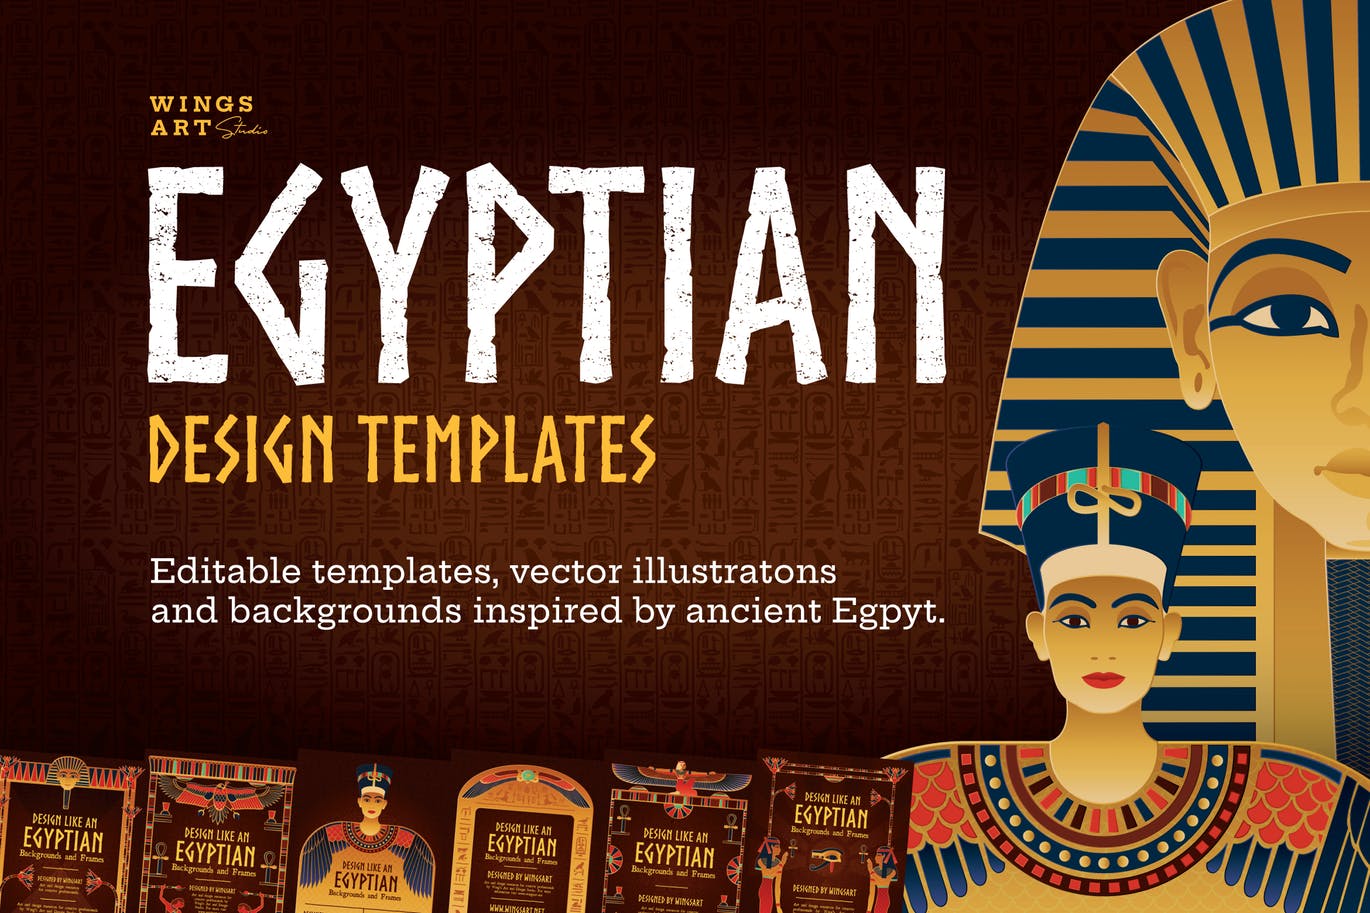 古埃及特色插画和复古海报设计模板 Egyptian Illustrations and Poster Templates插图